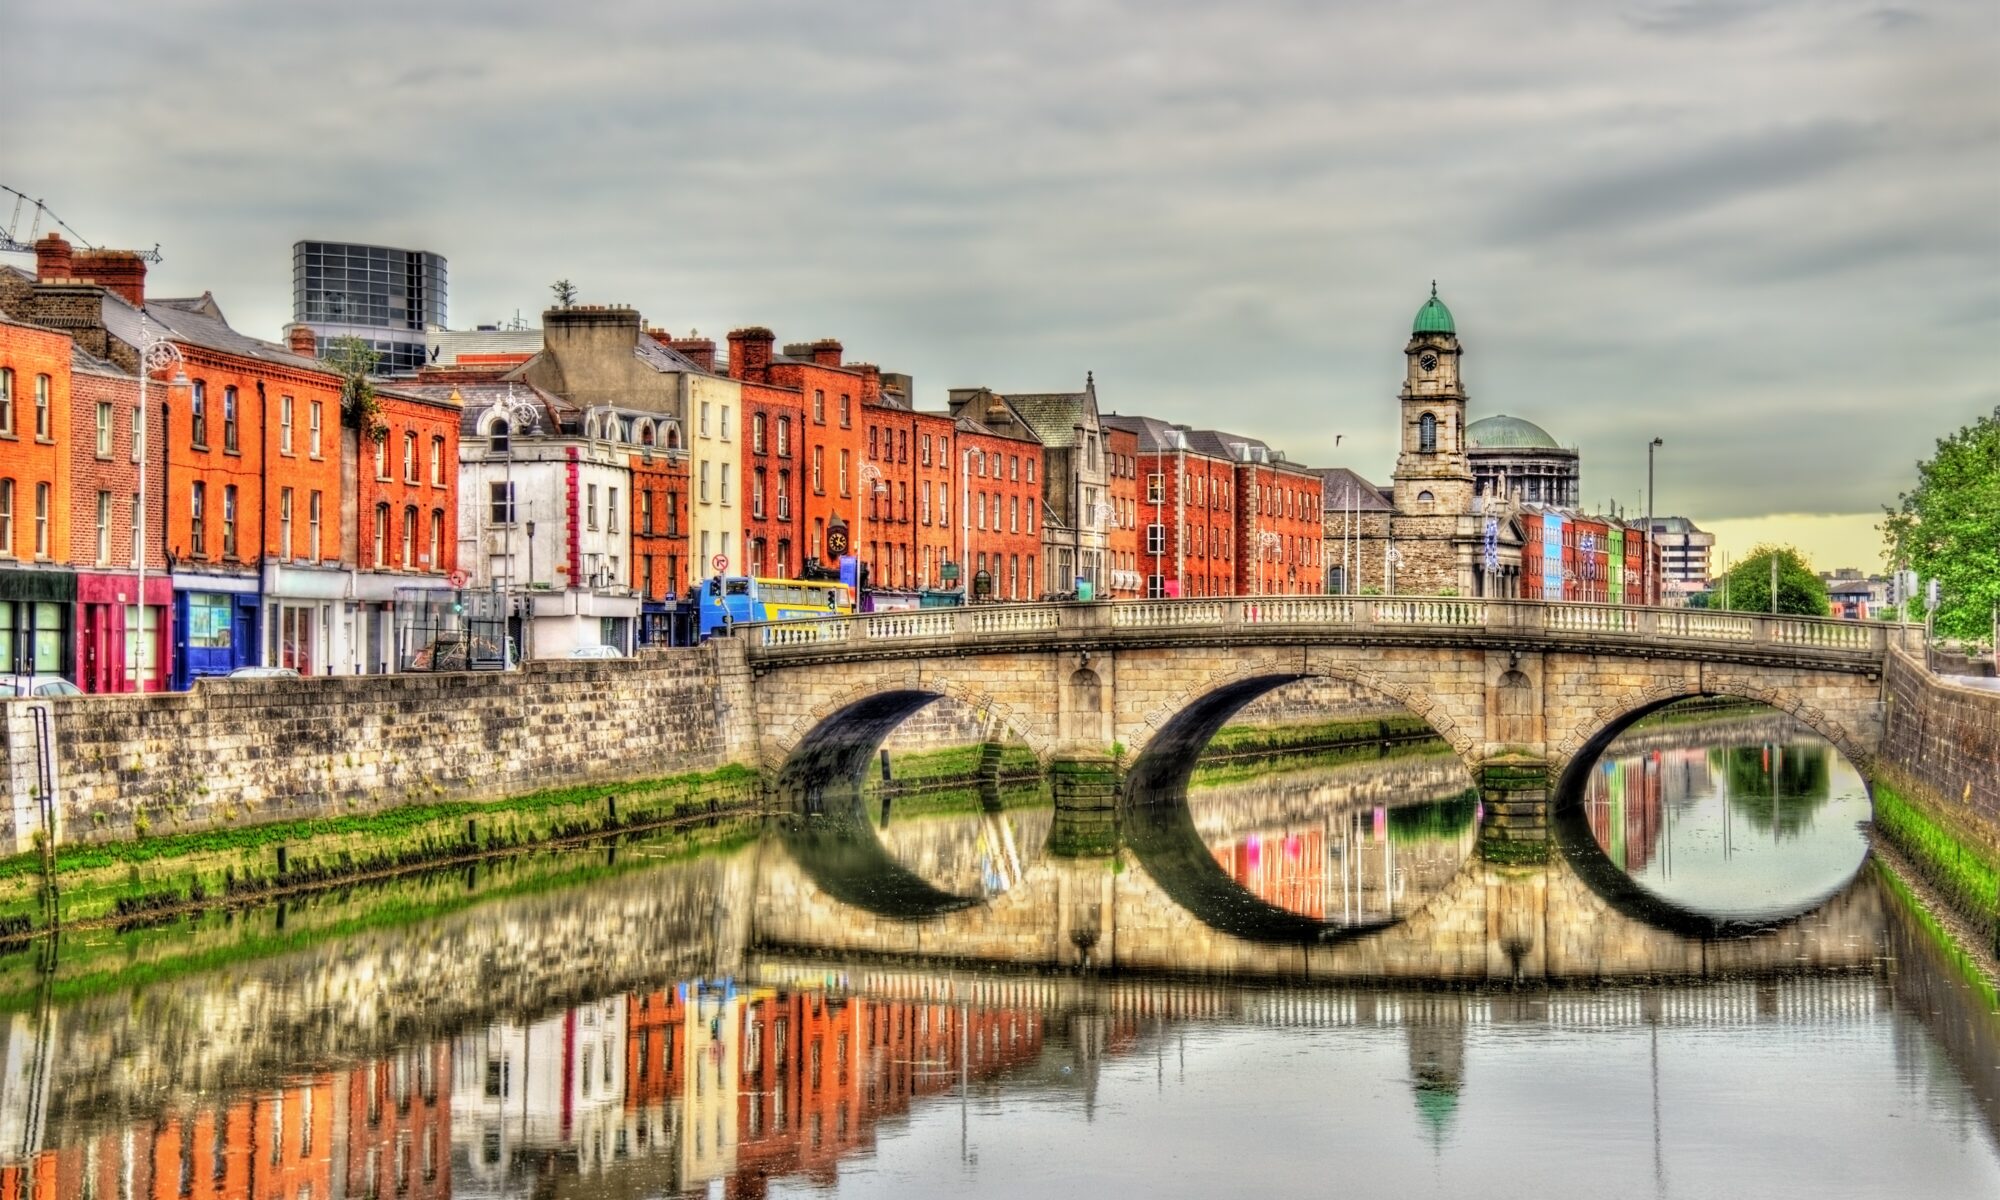 Hotels in Dublin Ireland